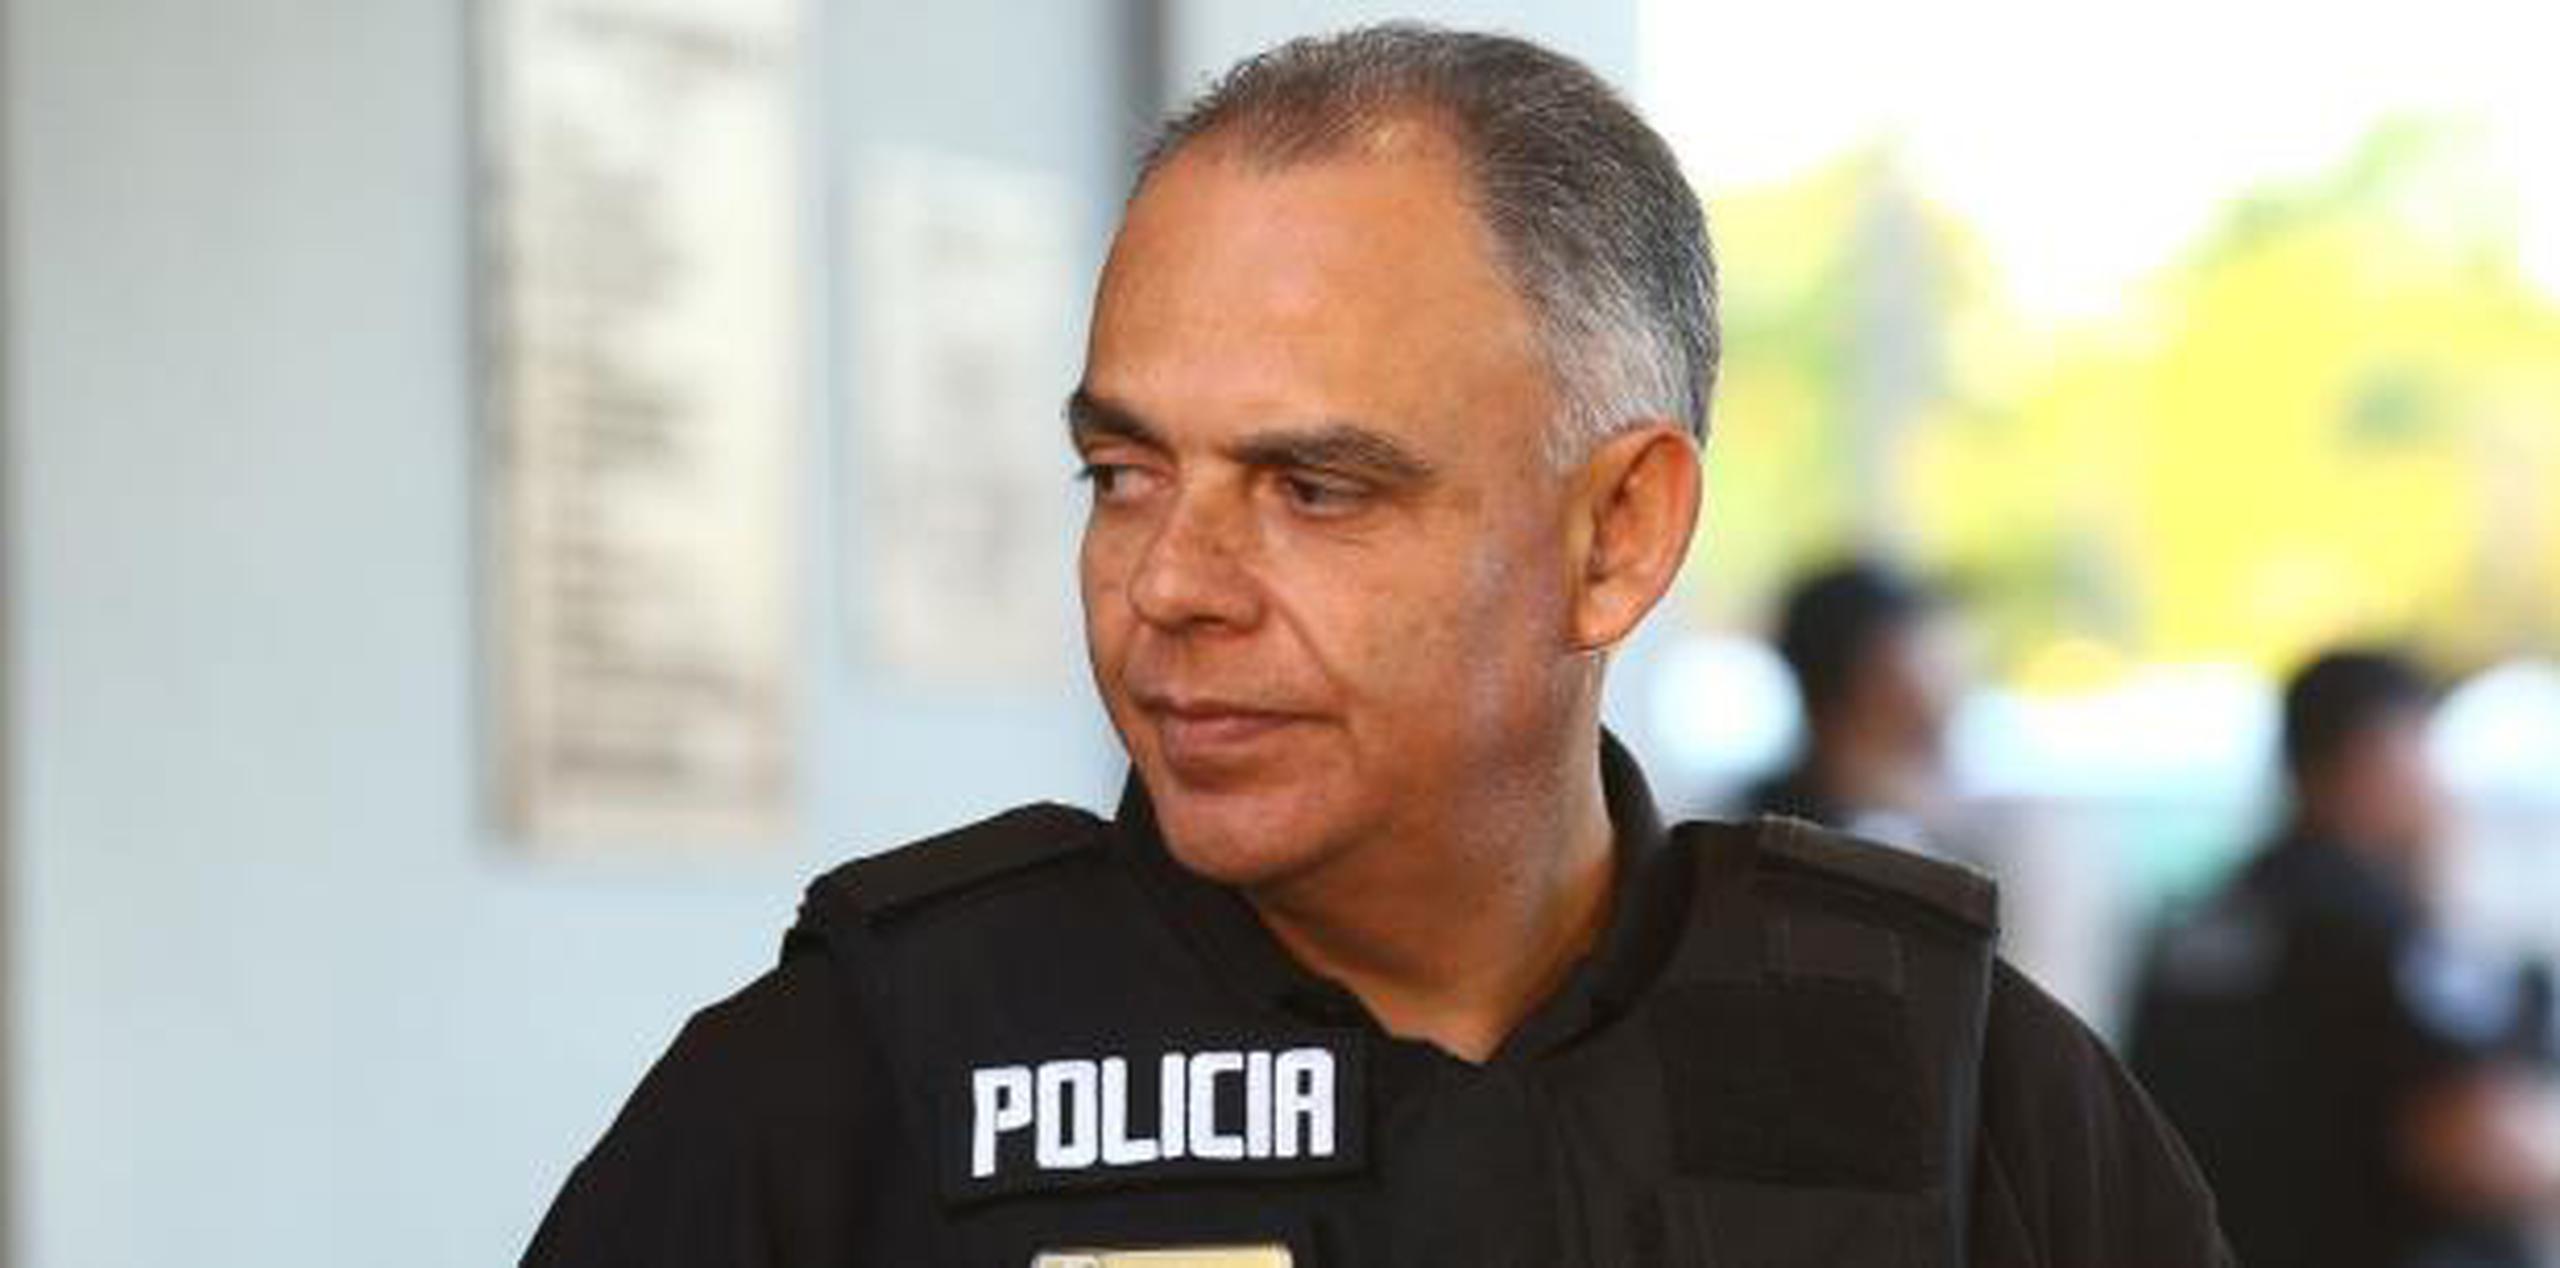 “He aceptado la renuncia que presentó el Comisionado de la Policía Municipal Guillermo Calixto efectiva el 15 de junio", dijo la alcaldesa. (Archivo)